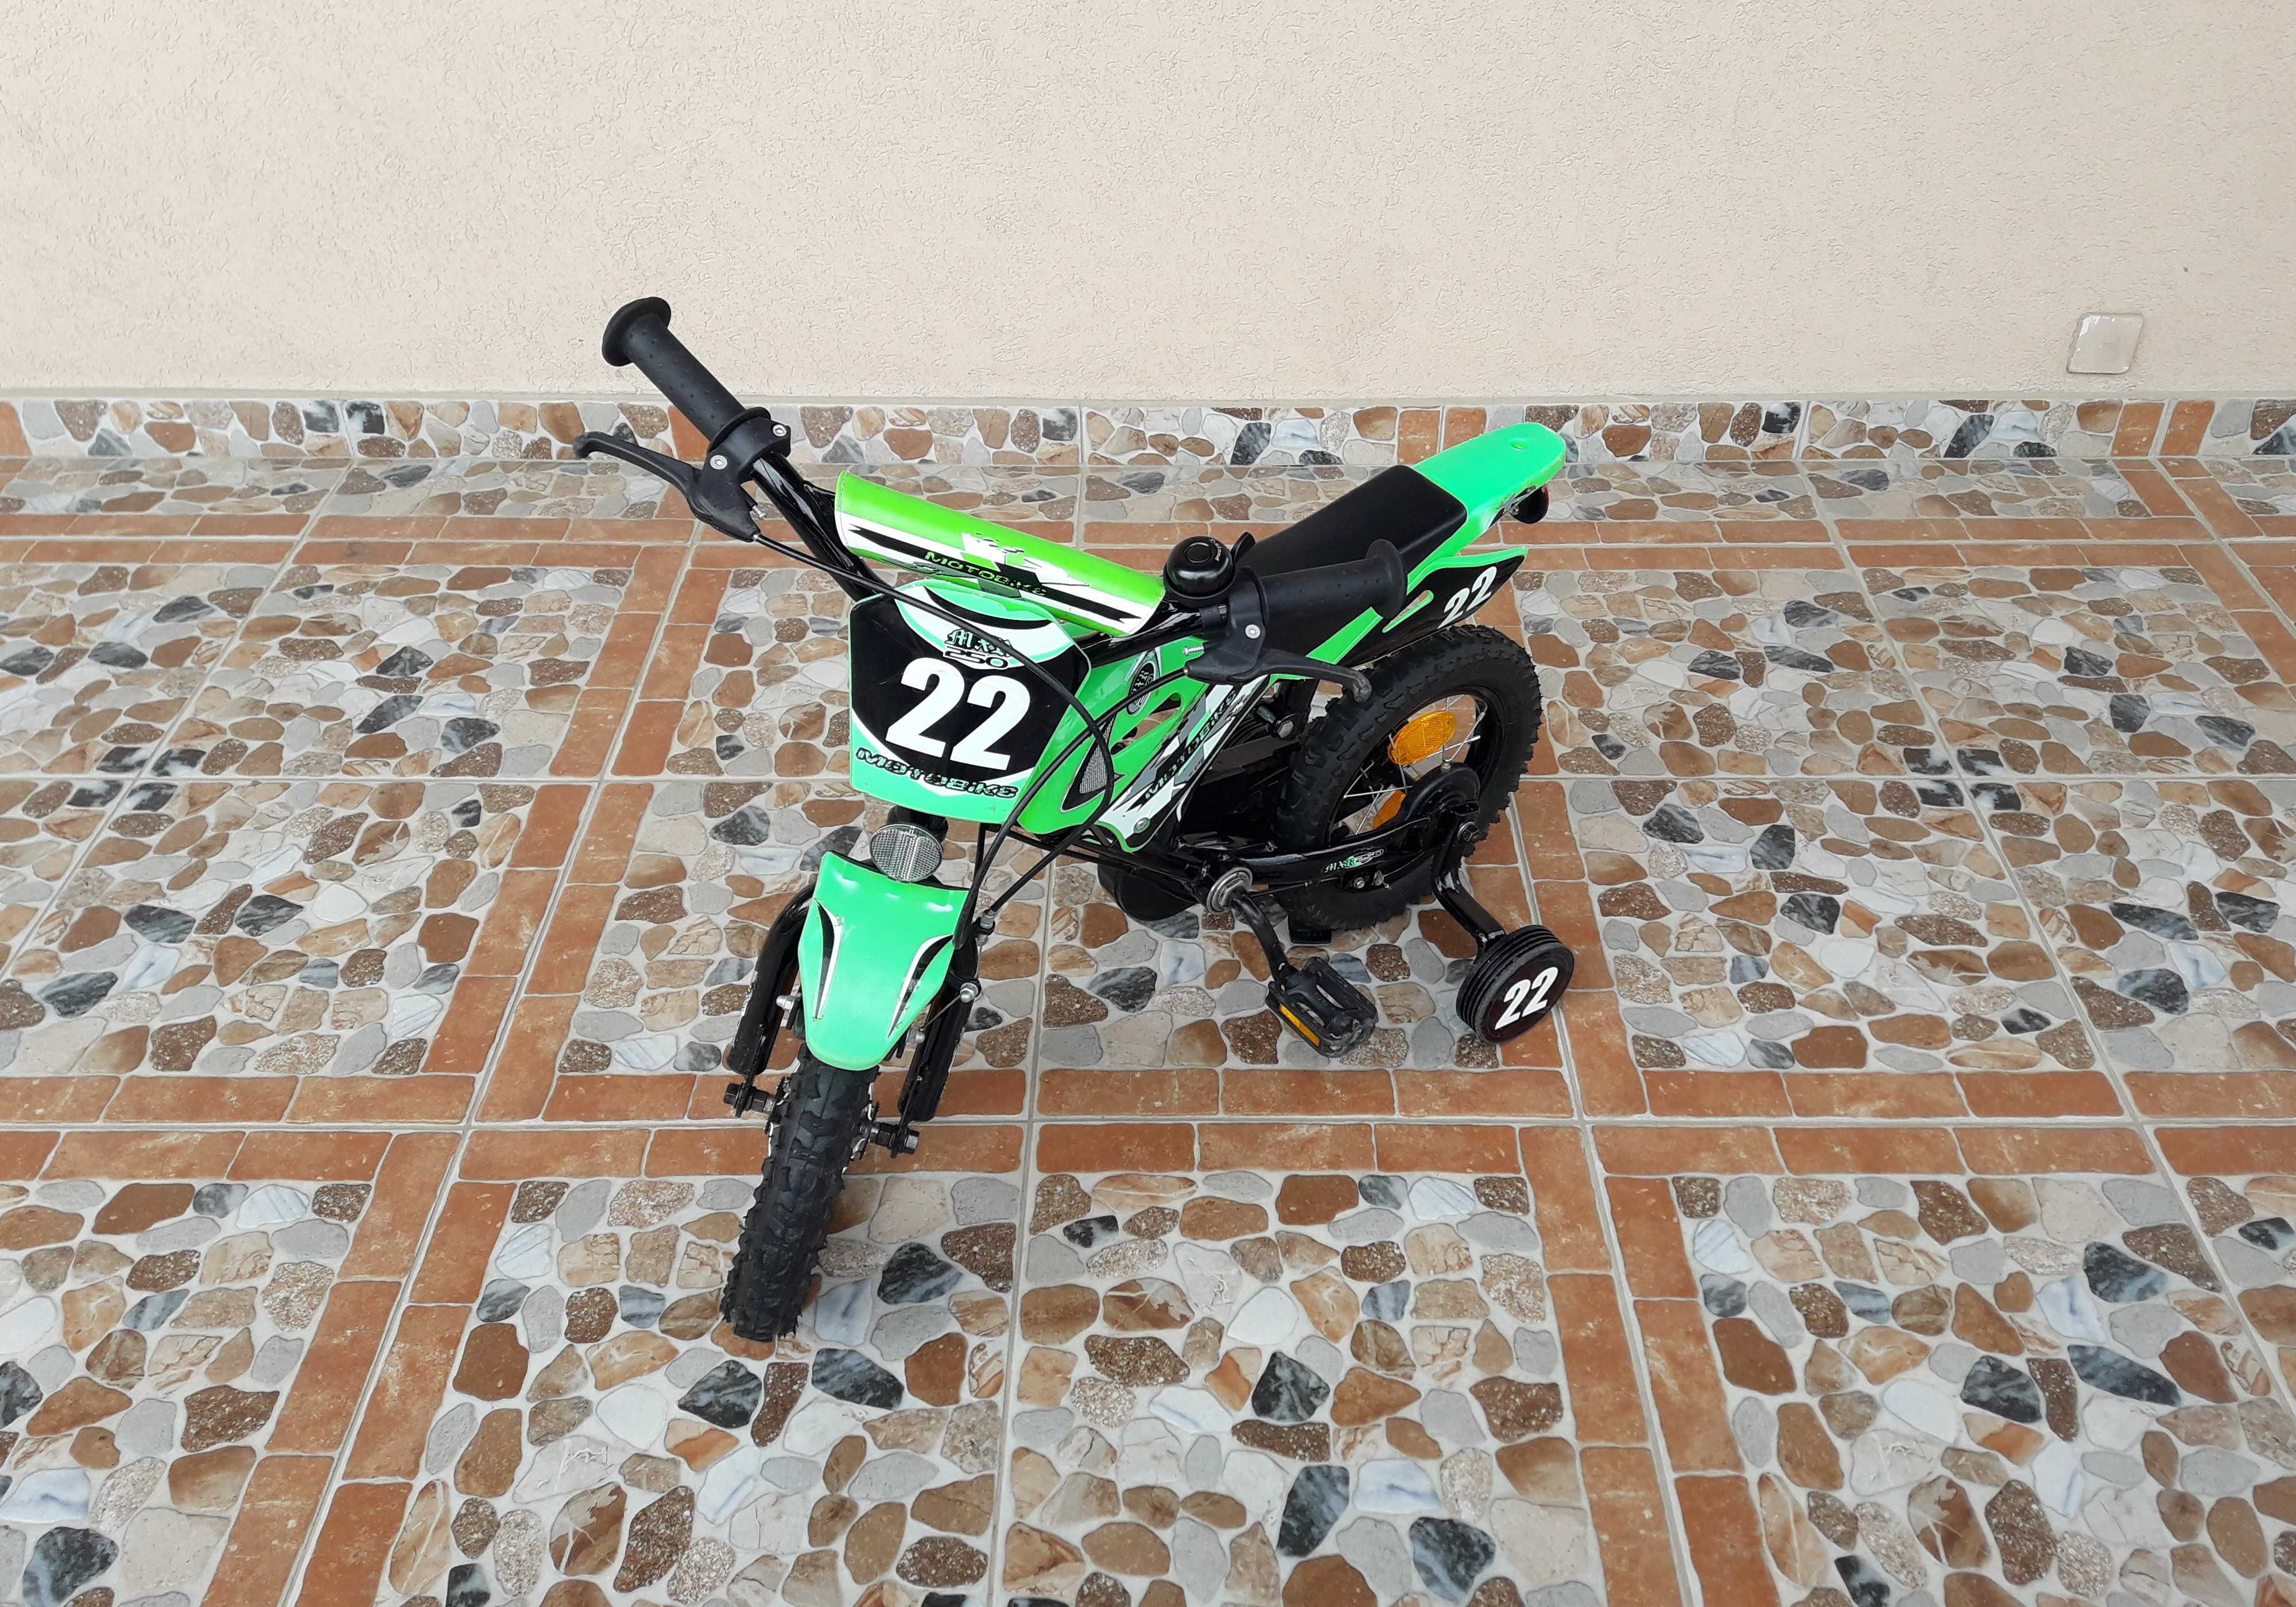 Bicicletă copii 12’ Motobike MXR 250, 12-1, cască – verde cu negru